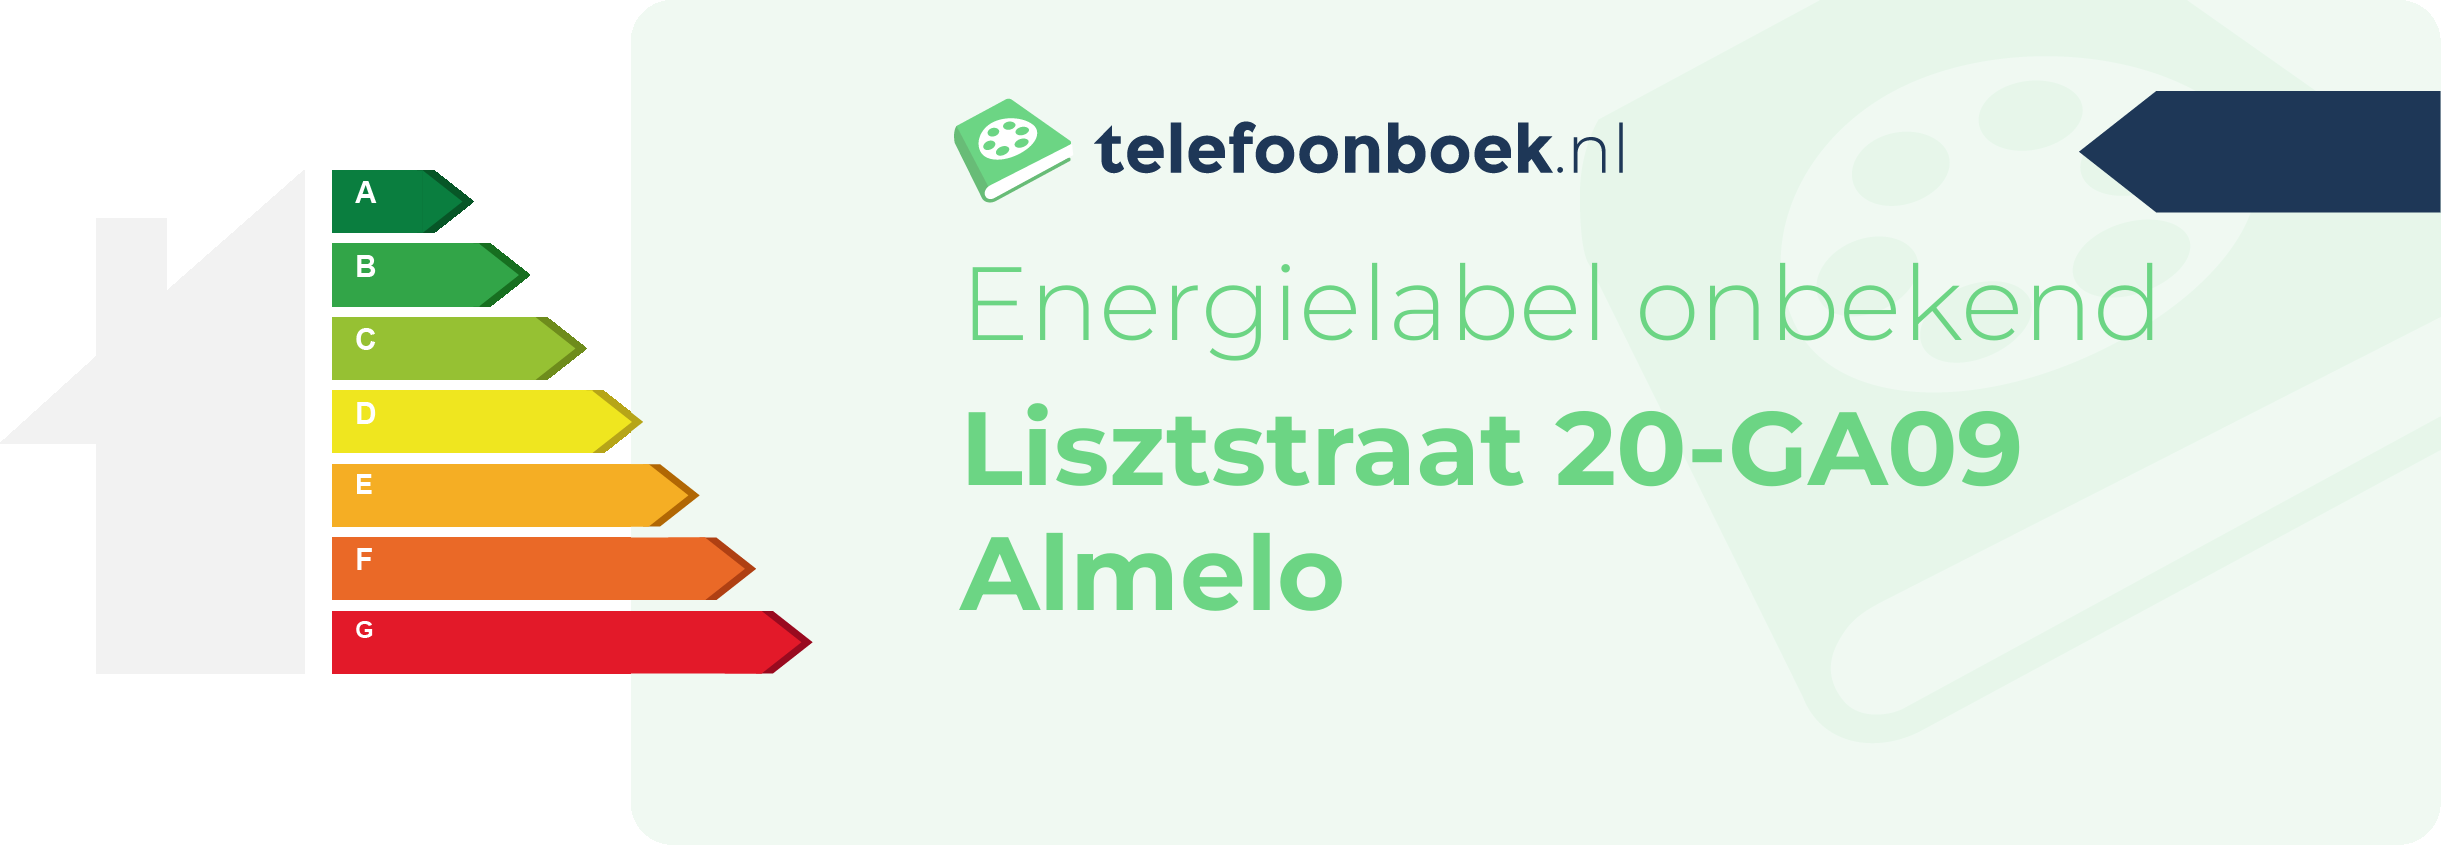 Energielabel Lisztstraat 20-GA09 Almelo